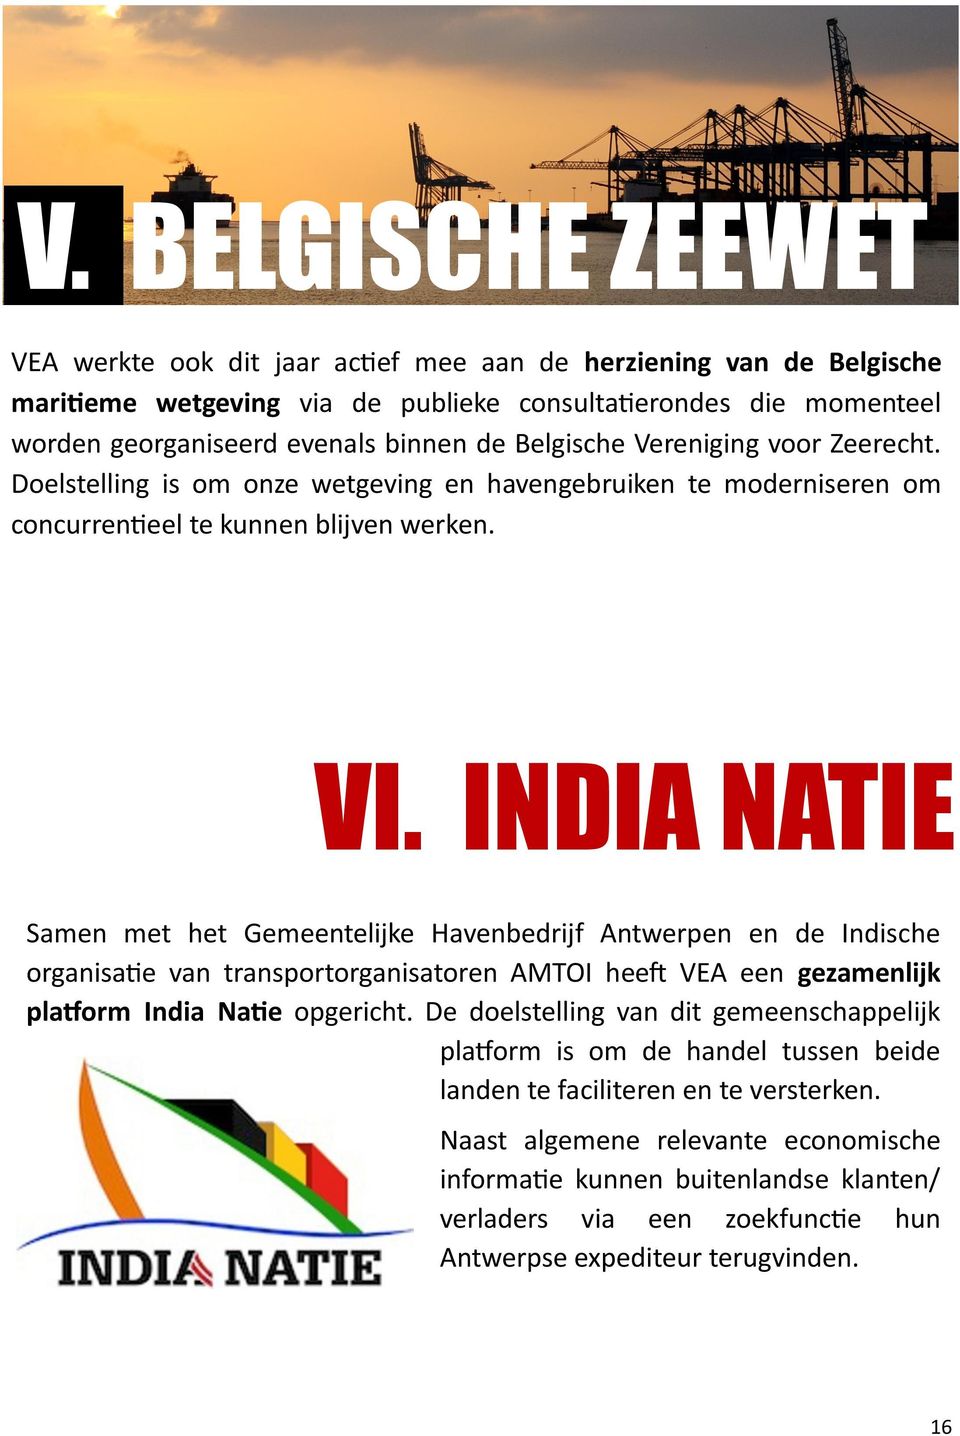 INDIA NATIE Samen met het Gemeentelijke Havenbedrijf Antwerpen en de Indische organisatie van transportorganisatoren AMTOI heeft VEA een gezamenlijk platform India Natie opgericht.